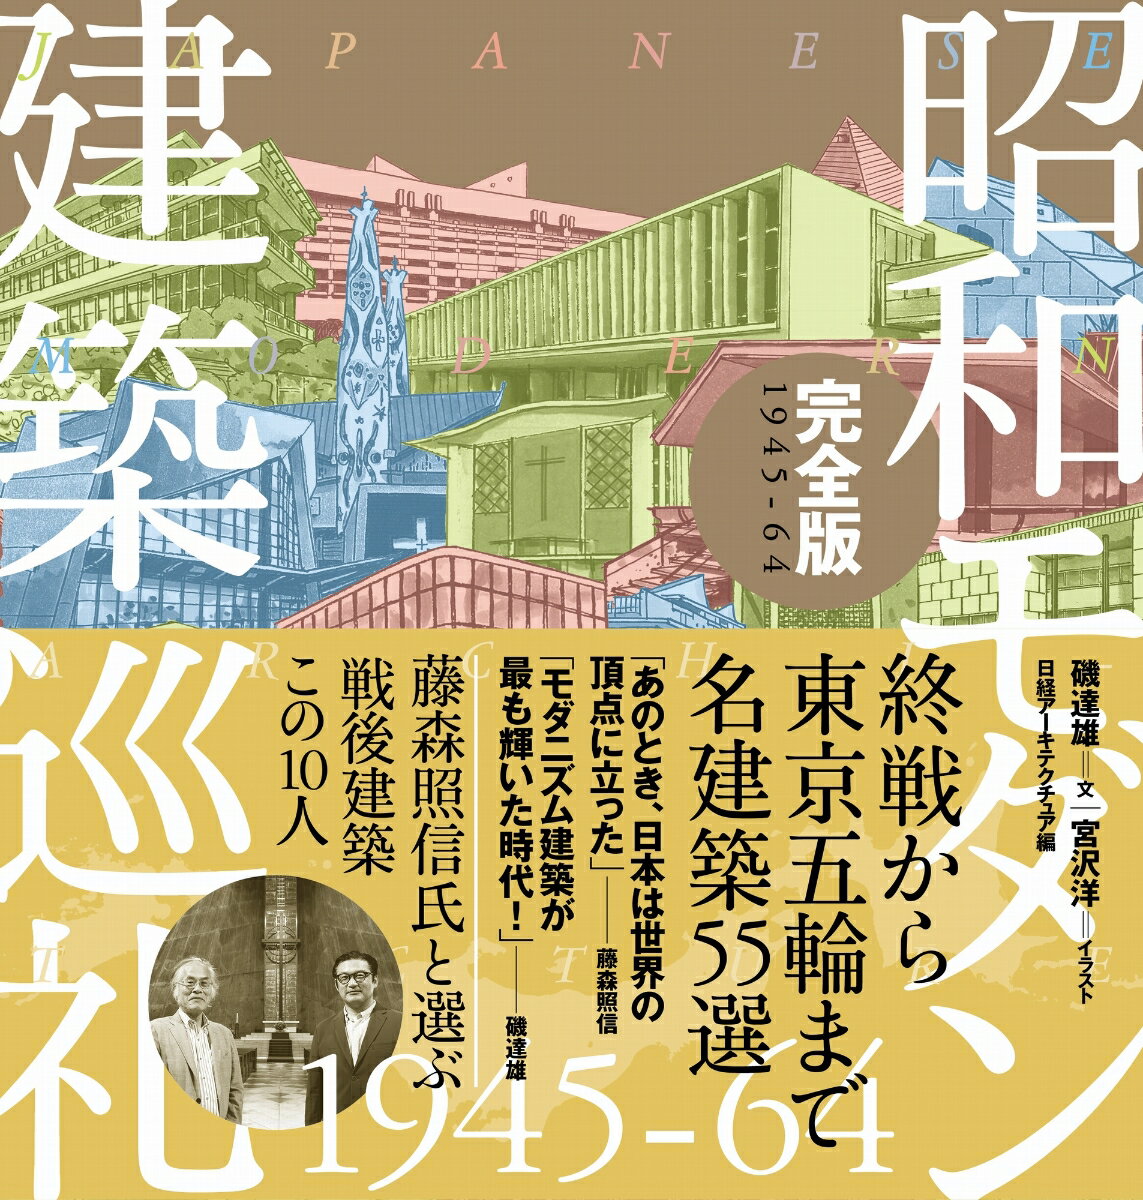 昭和モダン建築巡礼・完全版1945-64 [ 磯...の商品画像